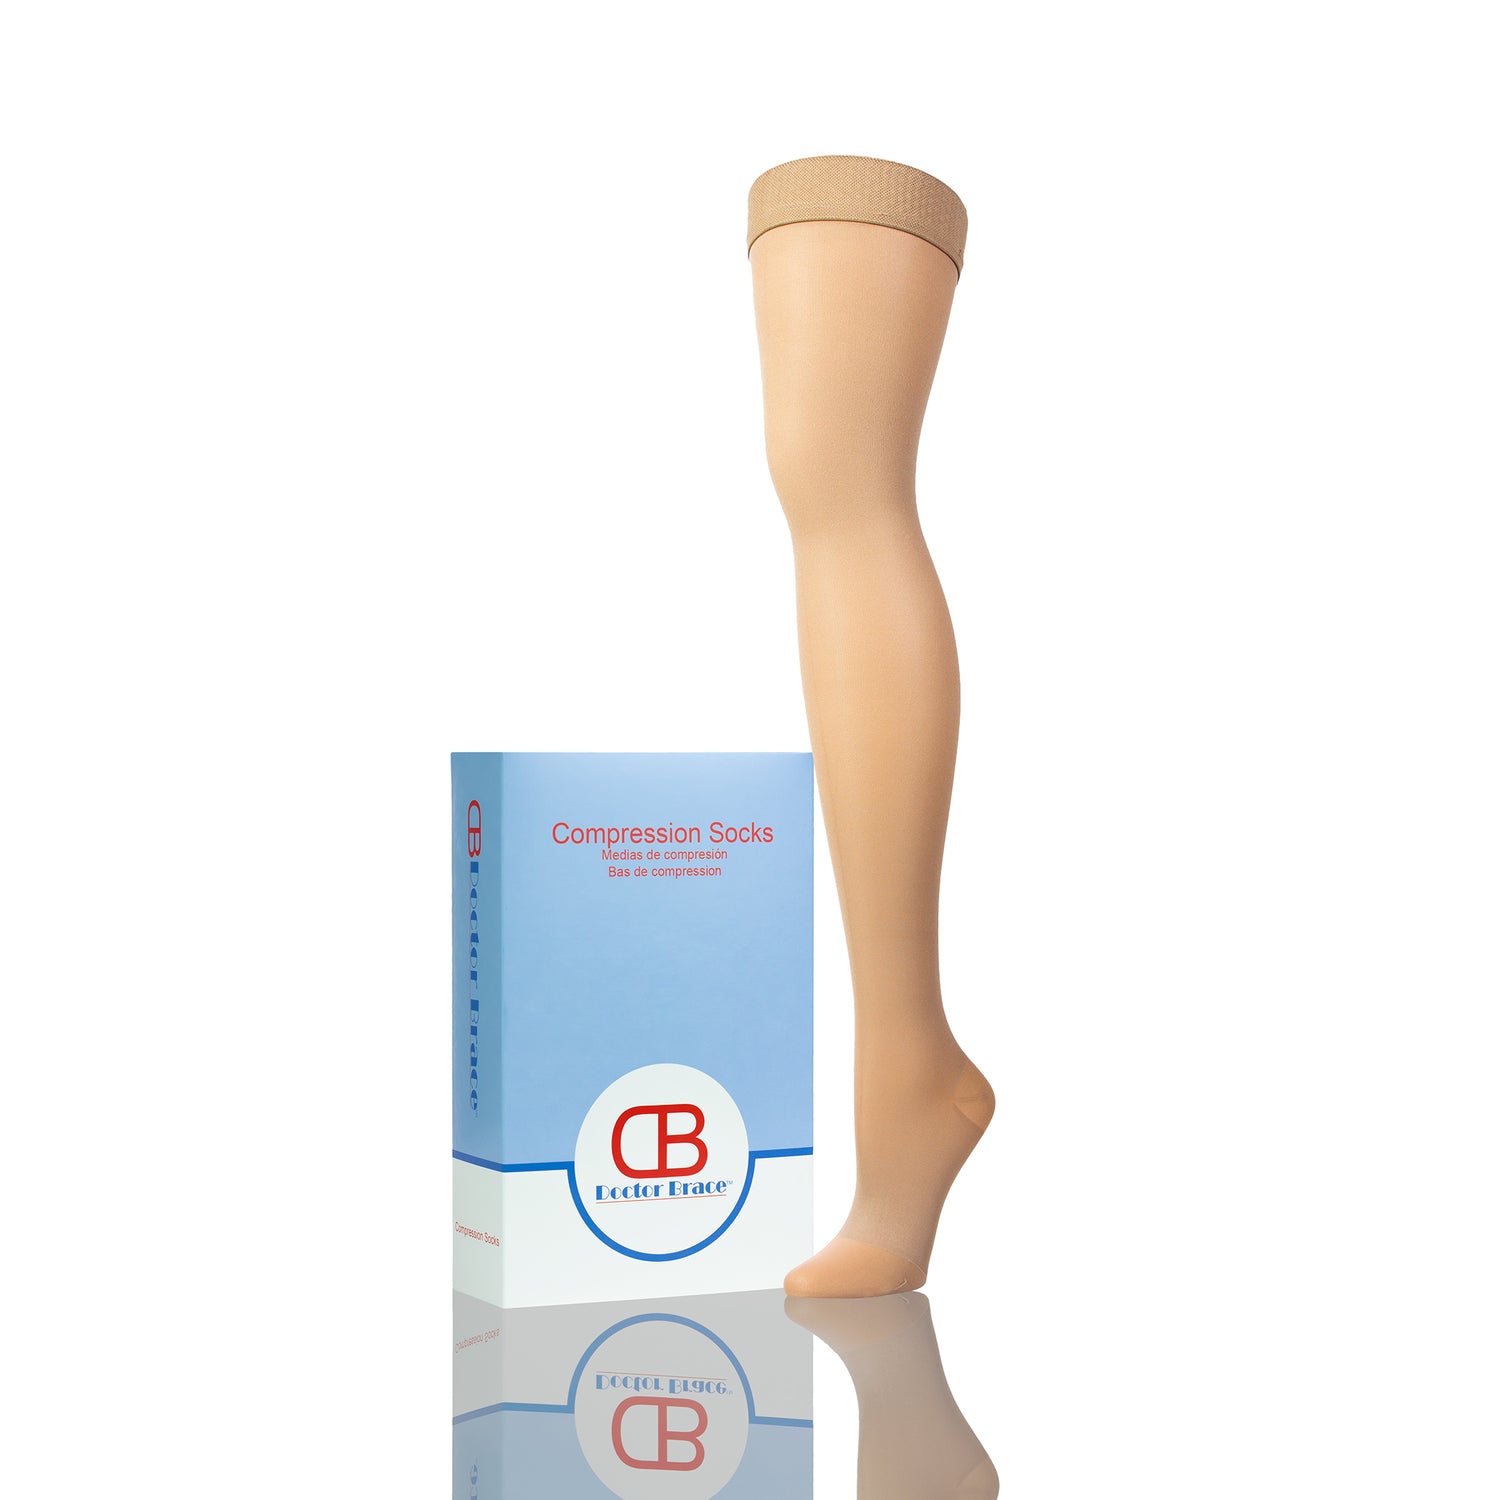 Knee High Compression Socks for Women & Men 30-40 mmHg - Best